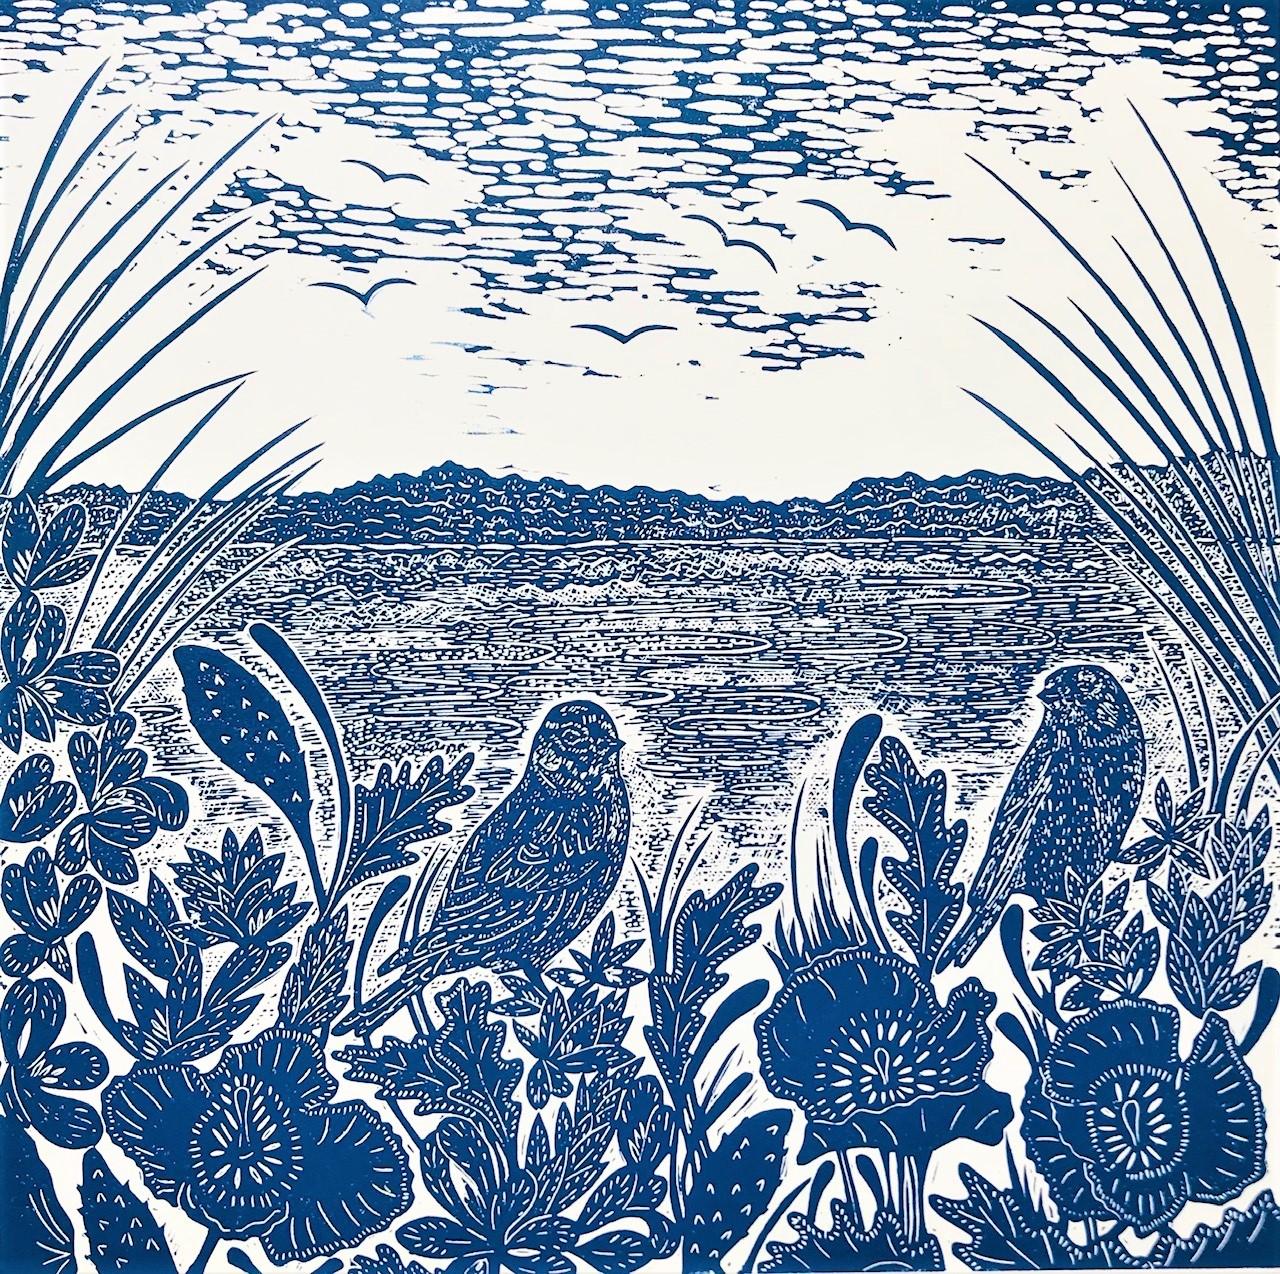 Klatschmohn und Hänflinge in Salthouse von Joanna Padfield [2022]
 
Sea Poppies and Linnets at Salthouse ist ein Original-Linolschnitt in limitierter Auflage, gedruckt in Blau. Alle meine Drucke werden von Hand gedruckt. Die Inspiration für diesen